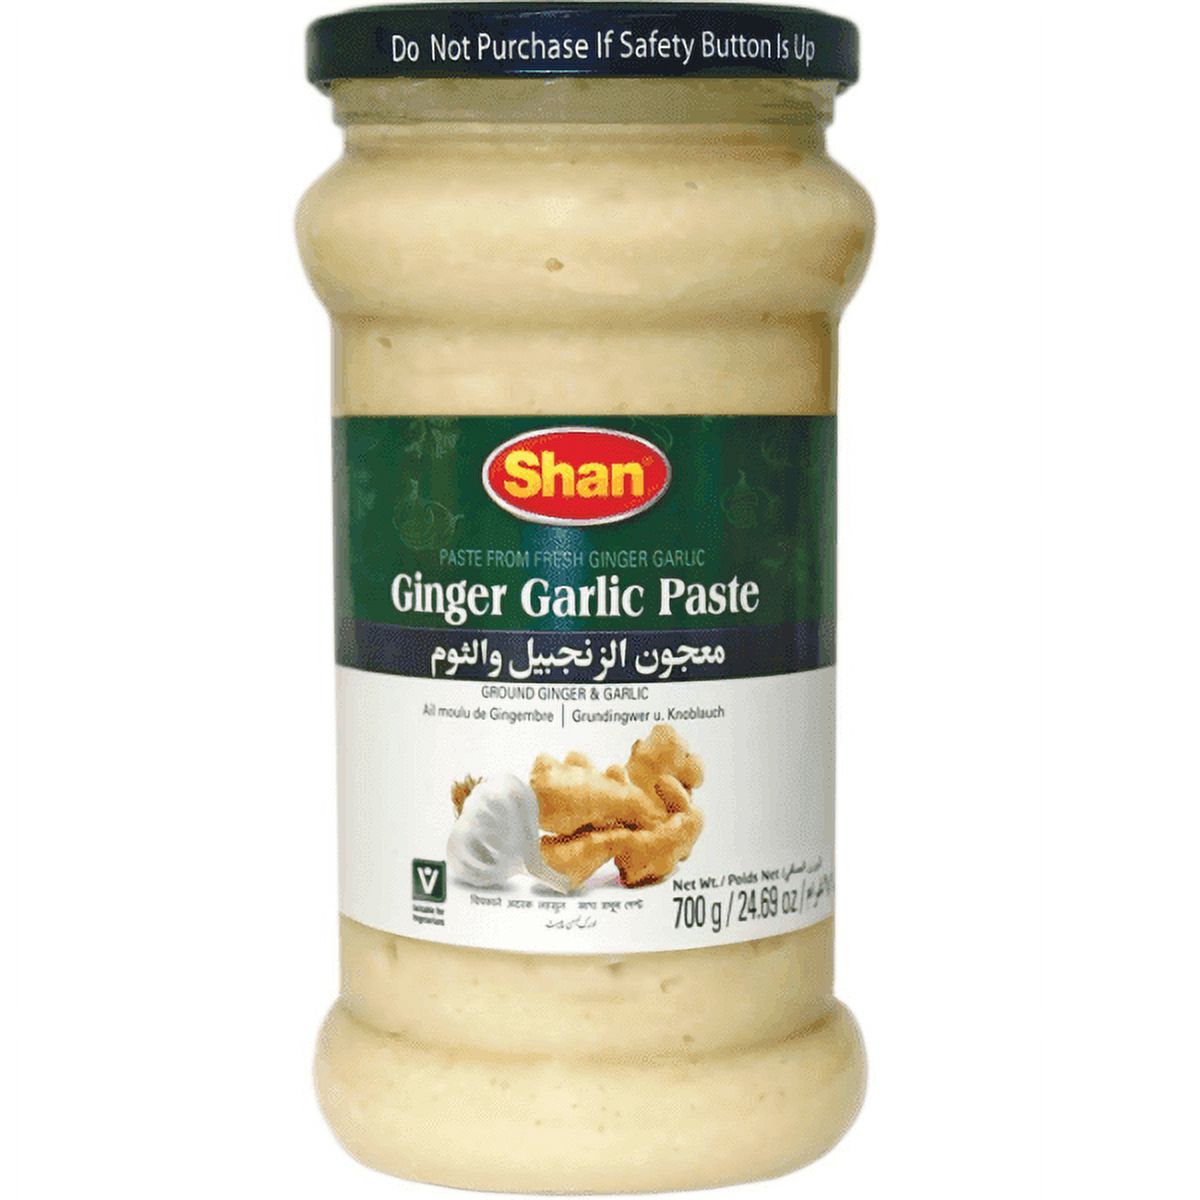 Shan Garlic Paste 310g (10.93oz) (Pack of 4) - image 2 of 2